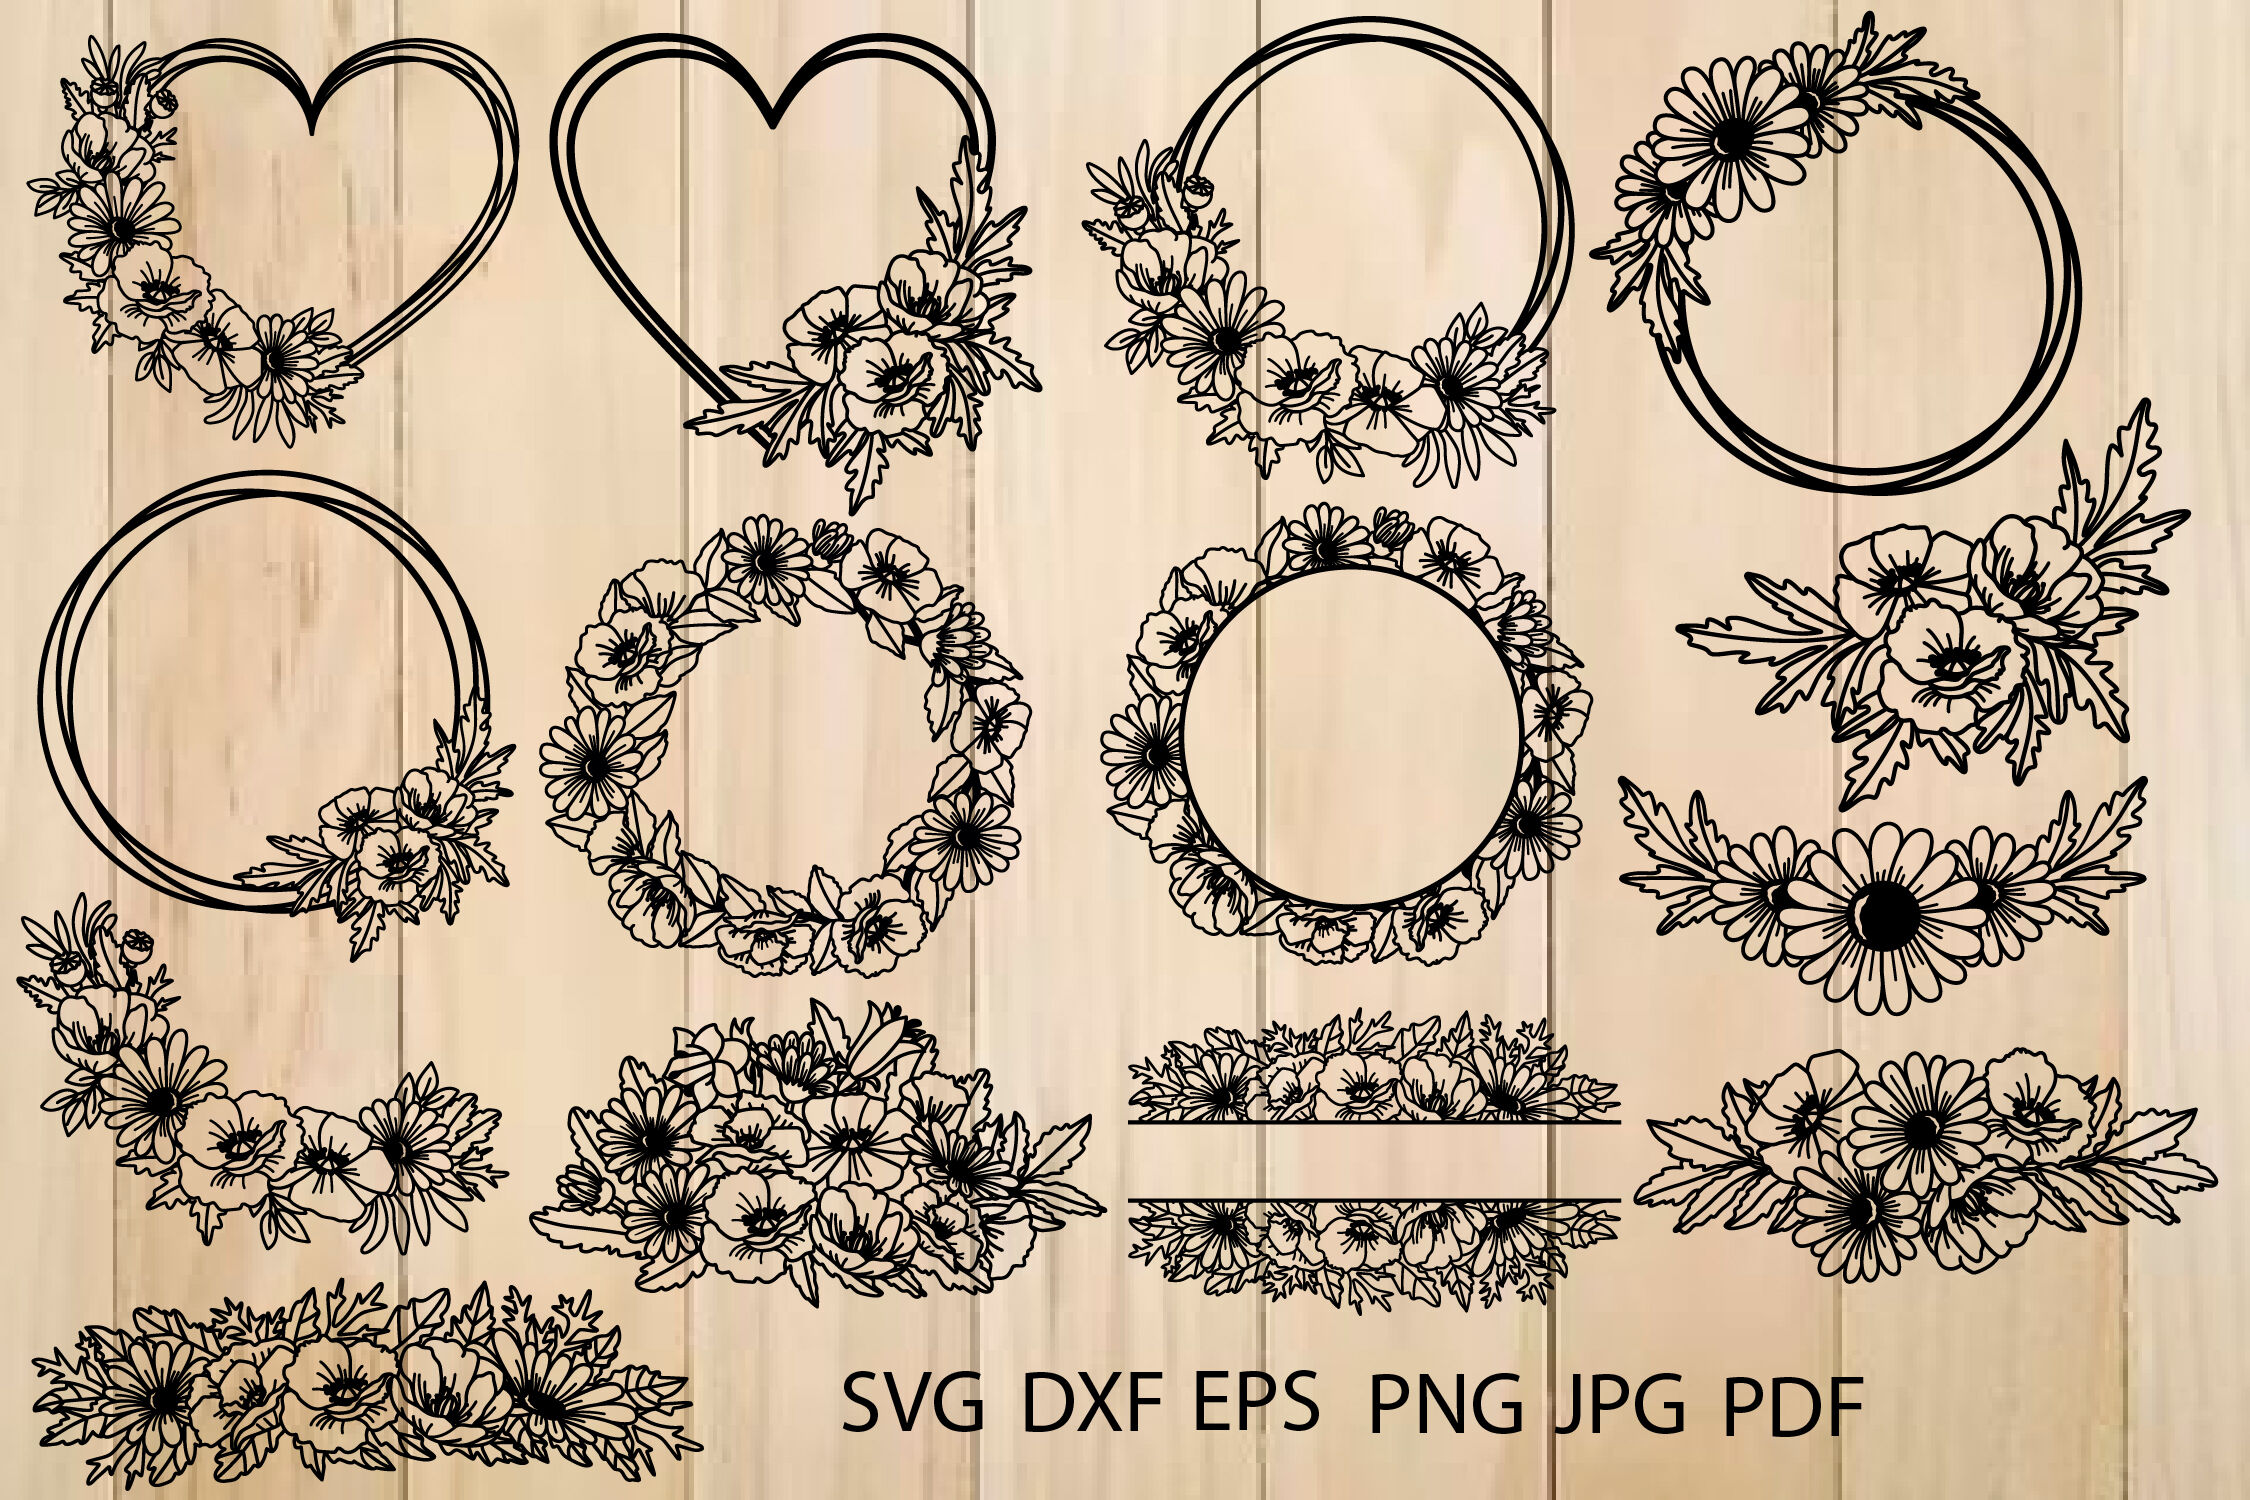 Gold Circle Frame clipart in Illustrator, SVG, PNG, JPG, EPS